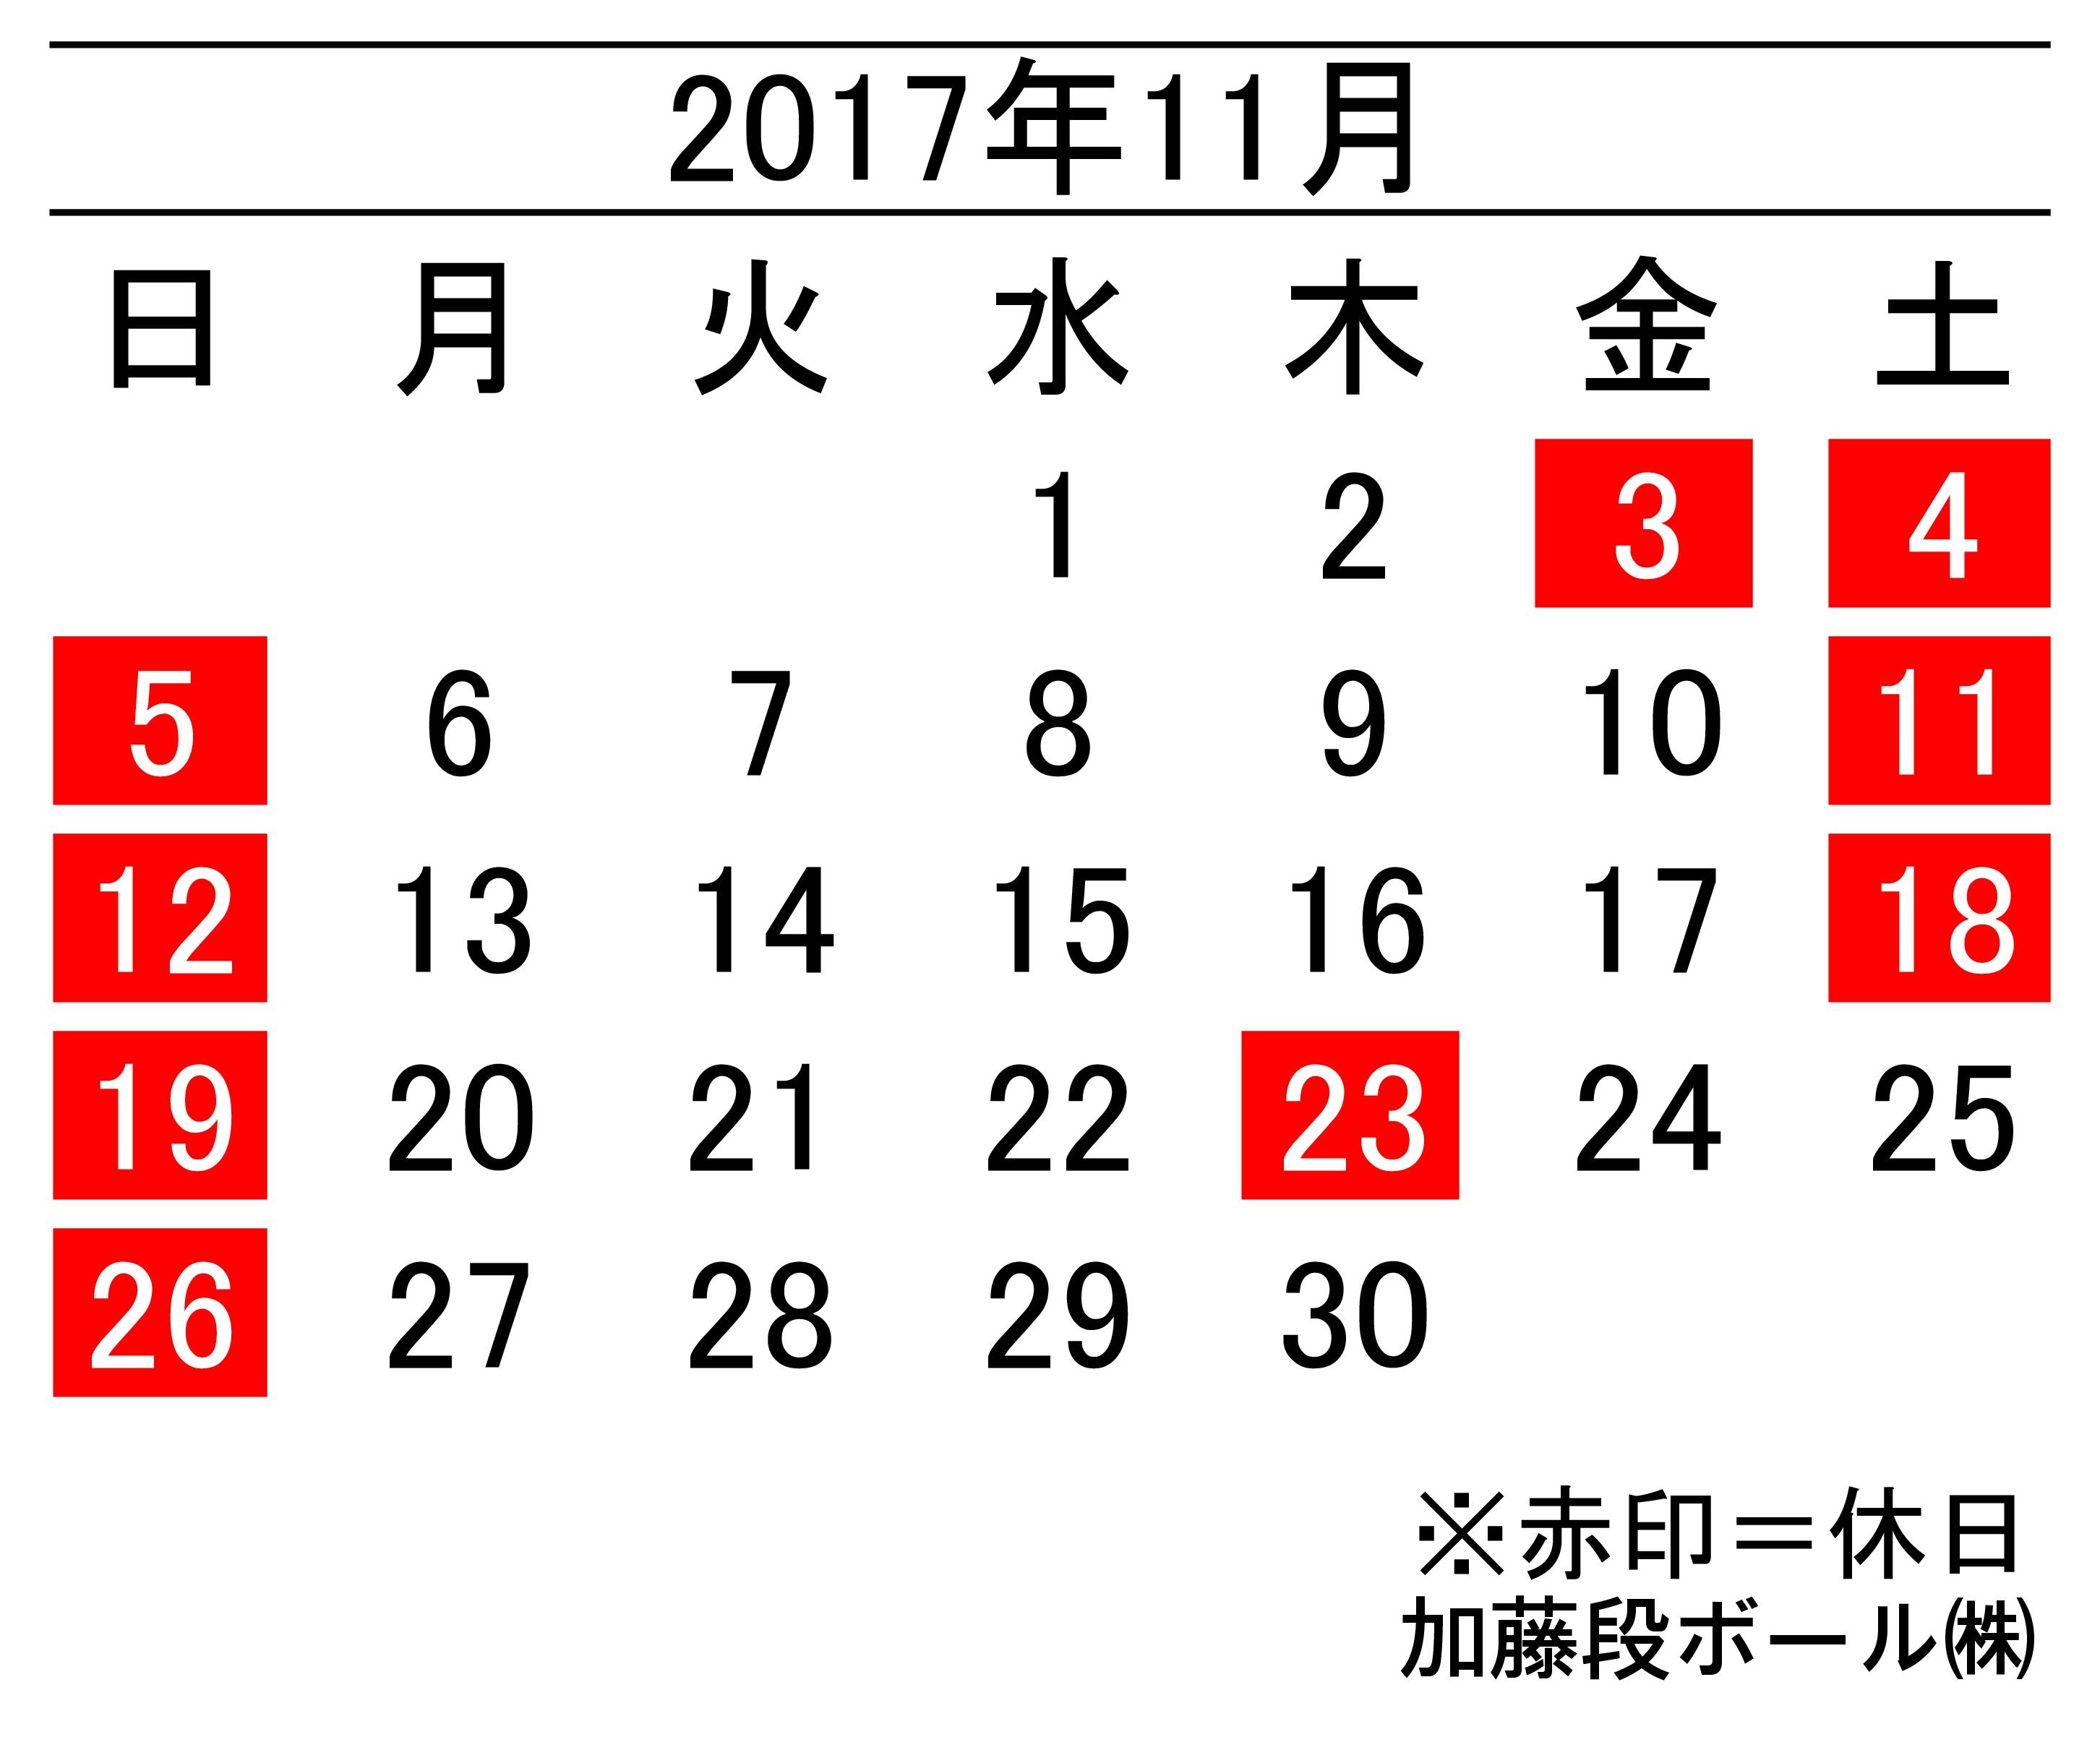 17年11月度営業日カレンダー 加藤段ボール株式会社 千葉 福島 神奈川を中心に段ボール製品 梱包資材の製造と販売